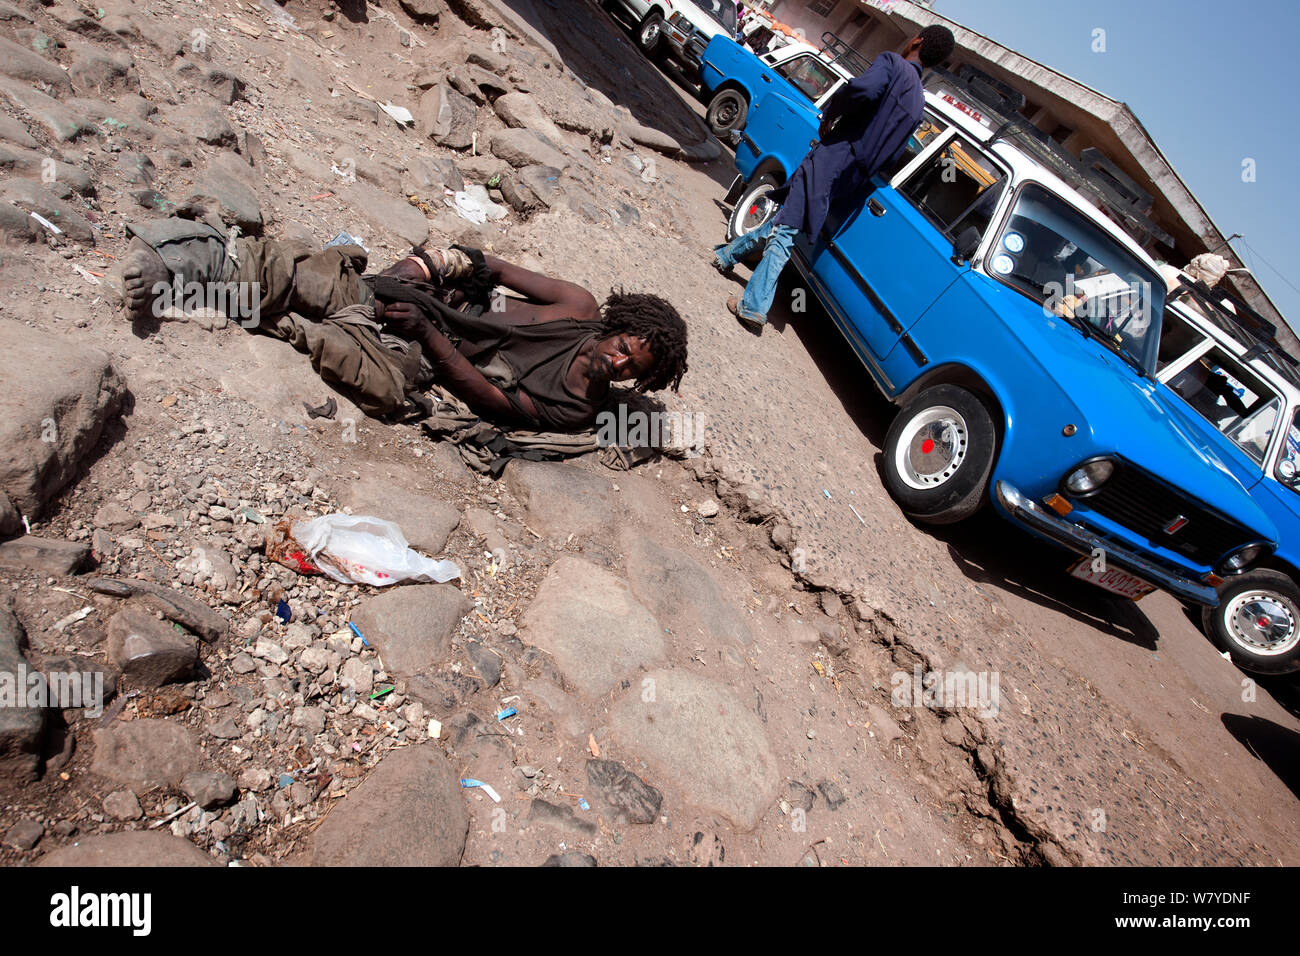 Mendiant sans-abri se trouve sur le sol près d'une station de taxi à Mercato, Addis Ababa, Ethiopie. Février 2009 Banque D'Images